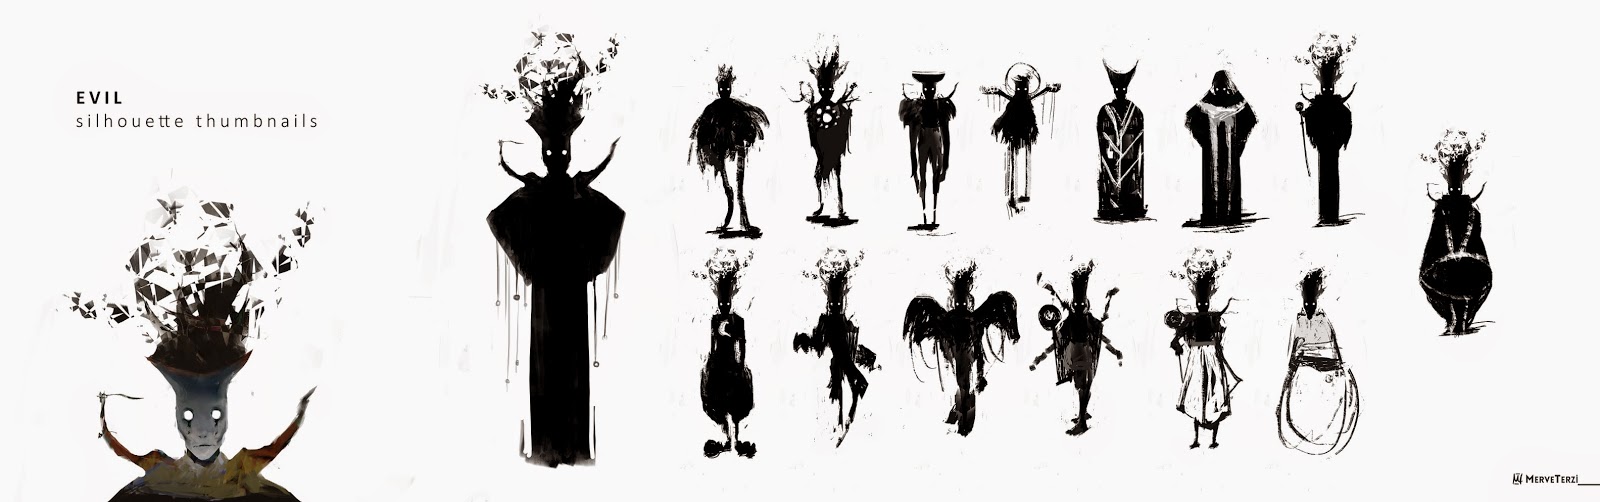 9 evil silhouette thumbnails.jpg